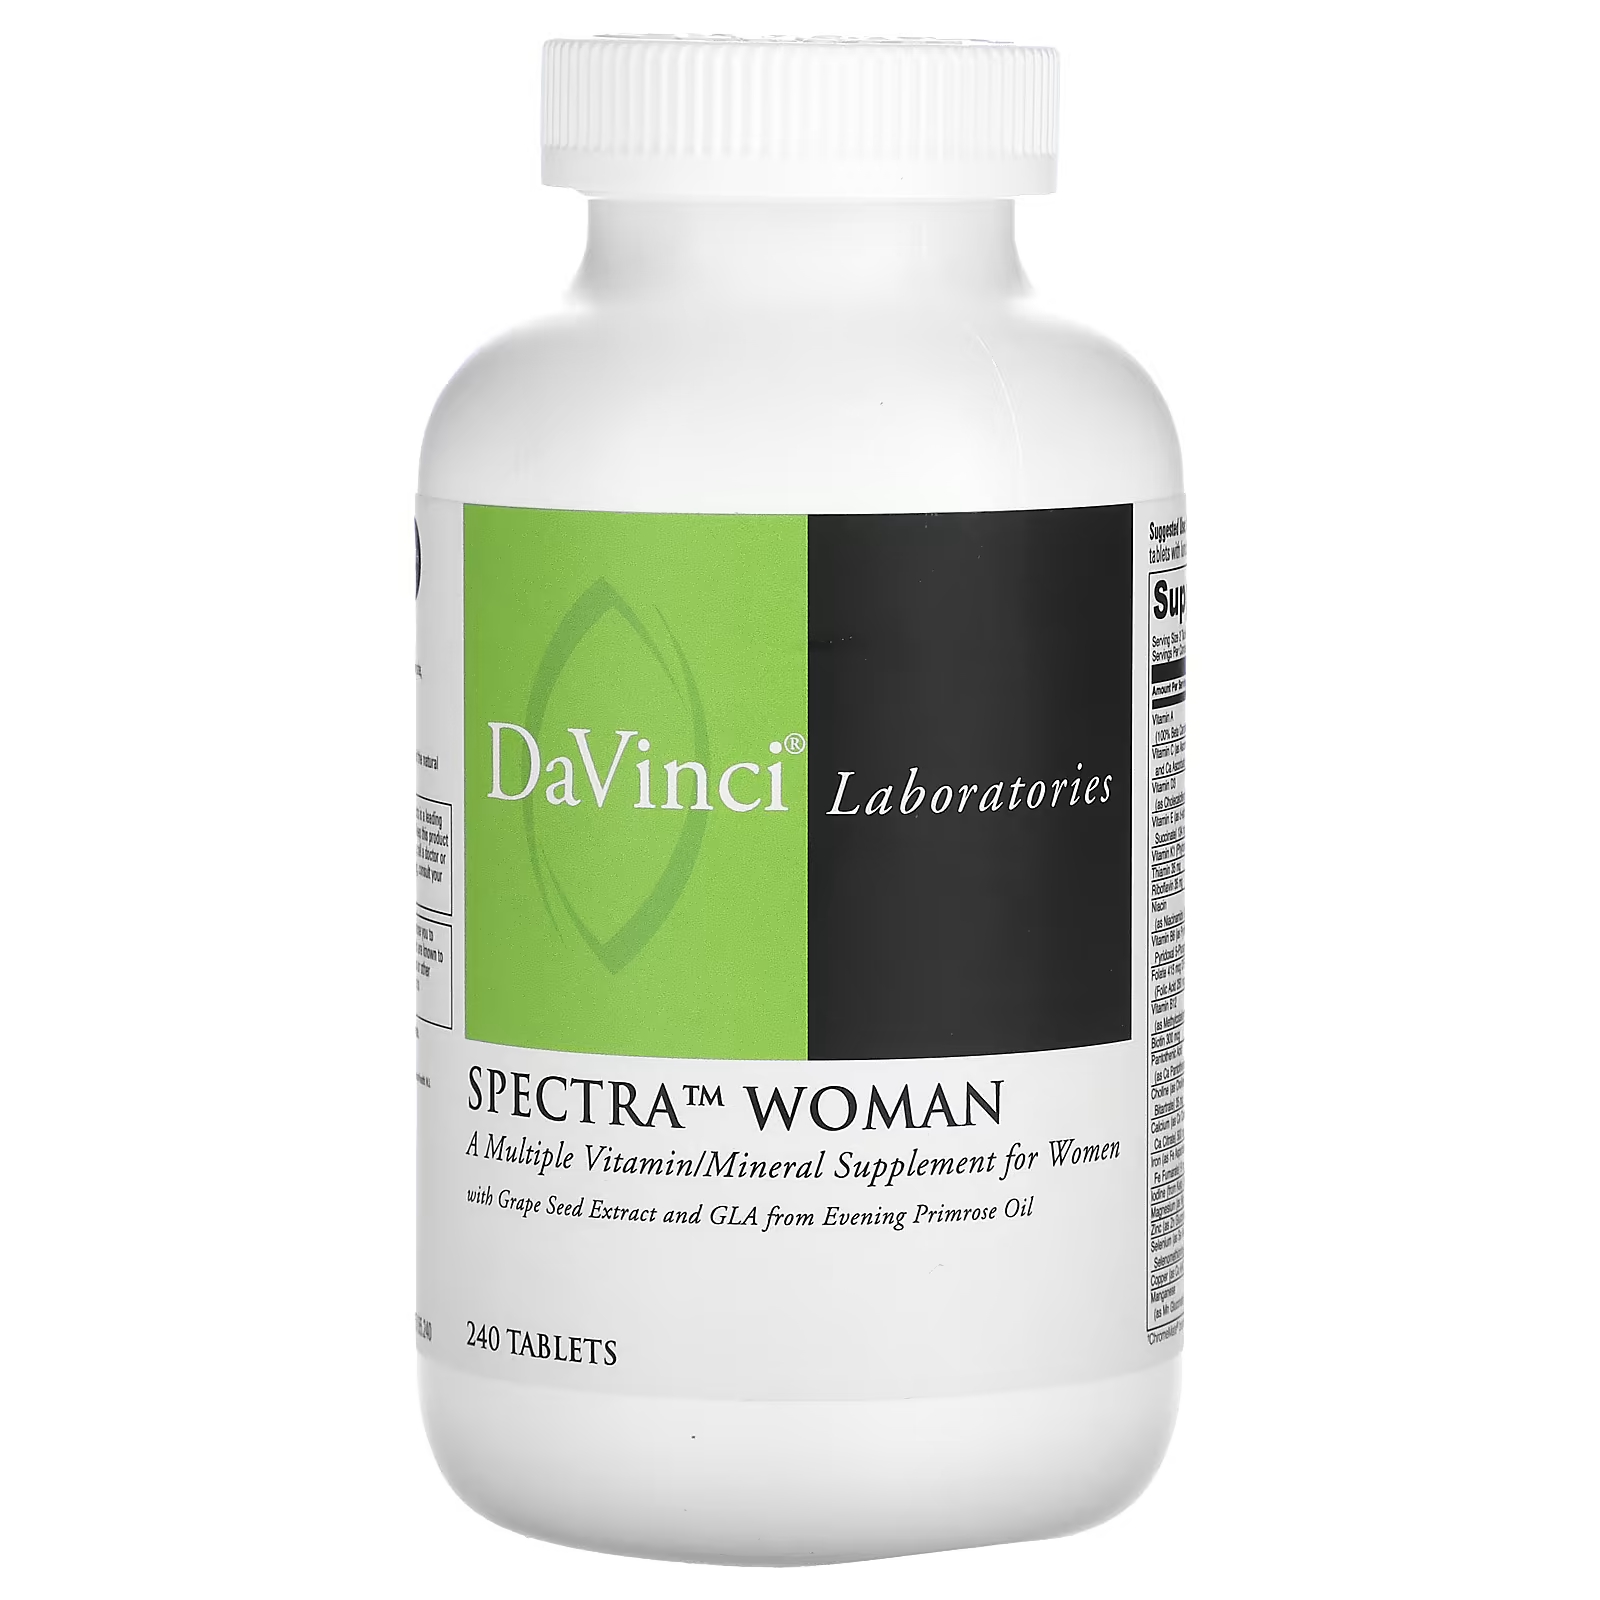 Витаминно-минеральные комплекс DaVinci Laboratories of Vermont Spectra Woman, 240 таблеток